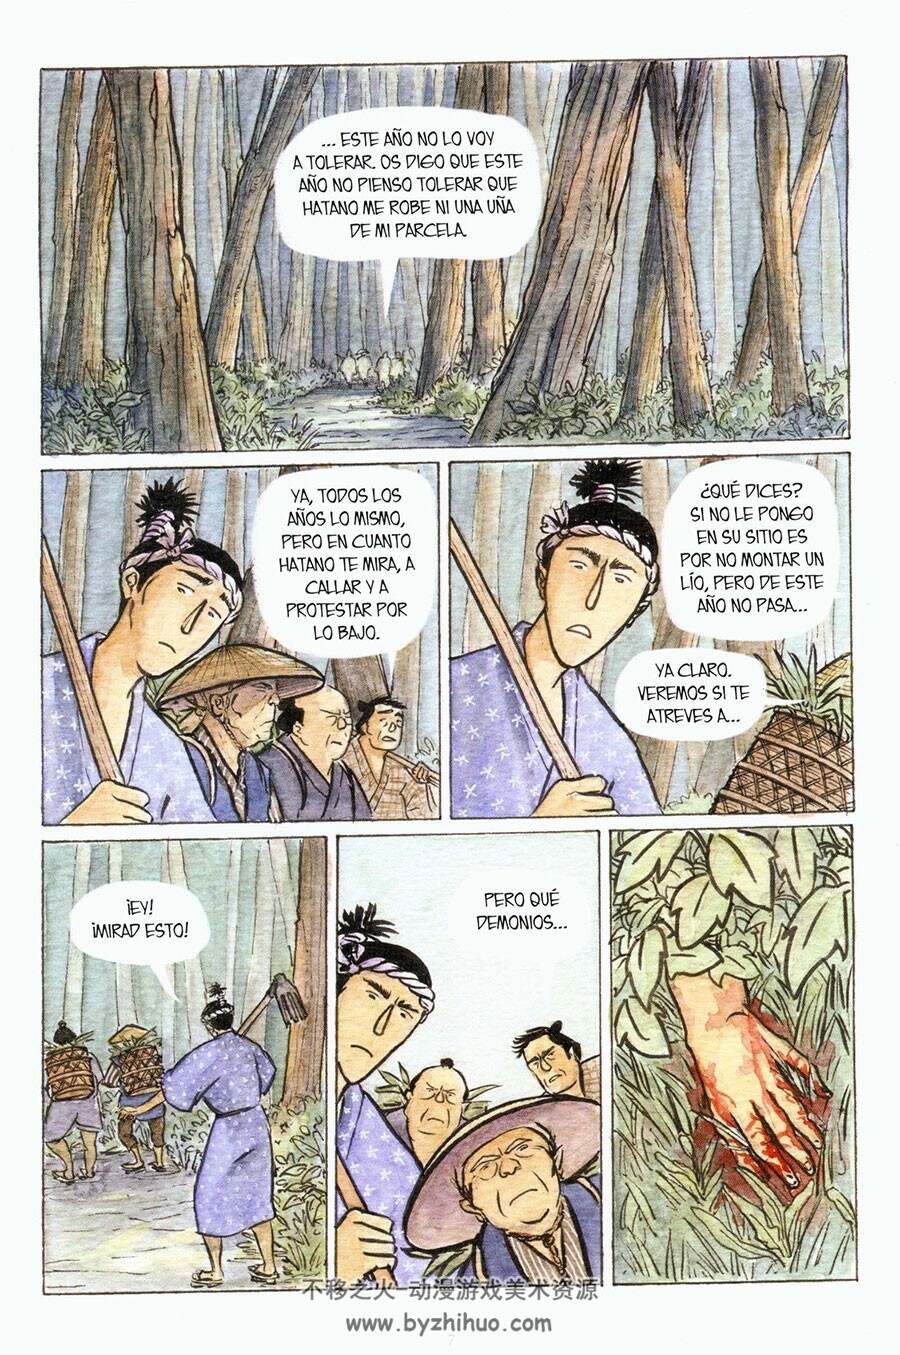 La hierba del estío 全一册 Lagartos Raquel 手绘彩色水彩西班牙语漫画